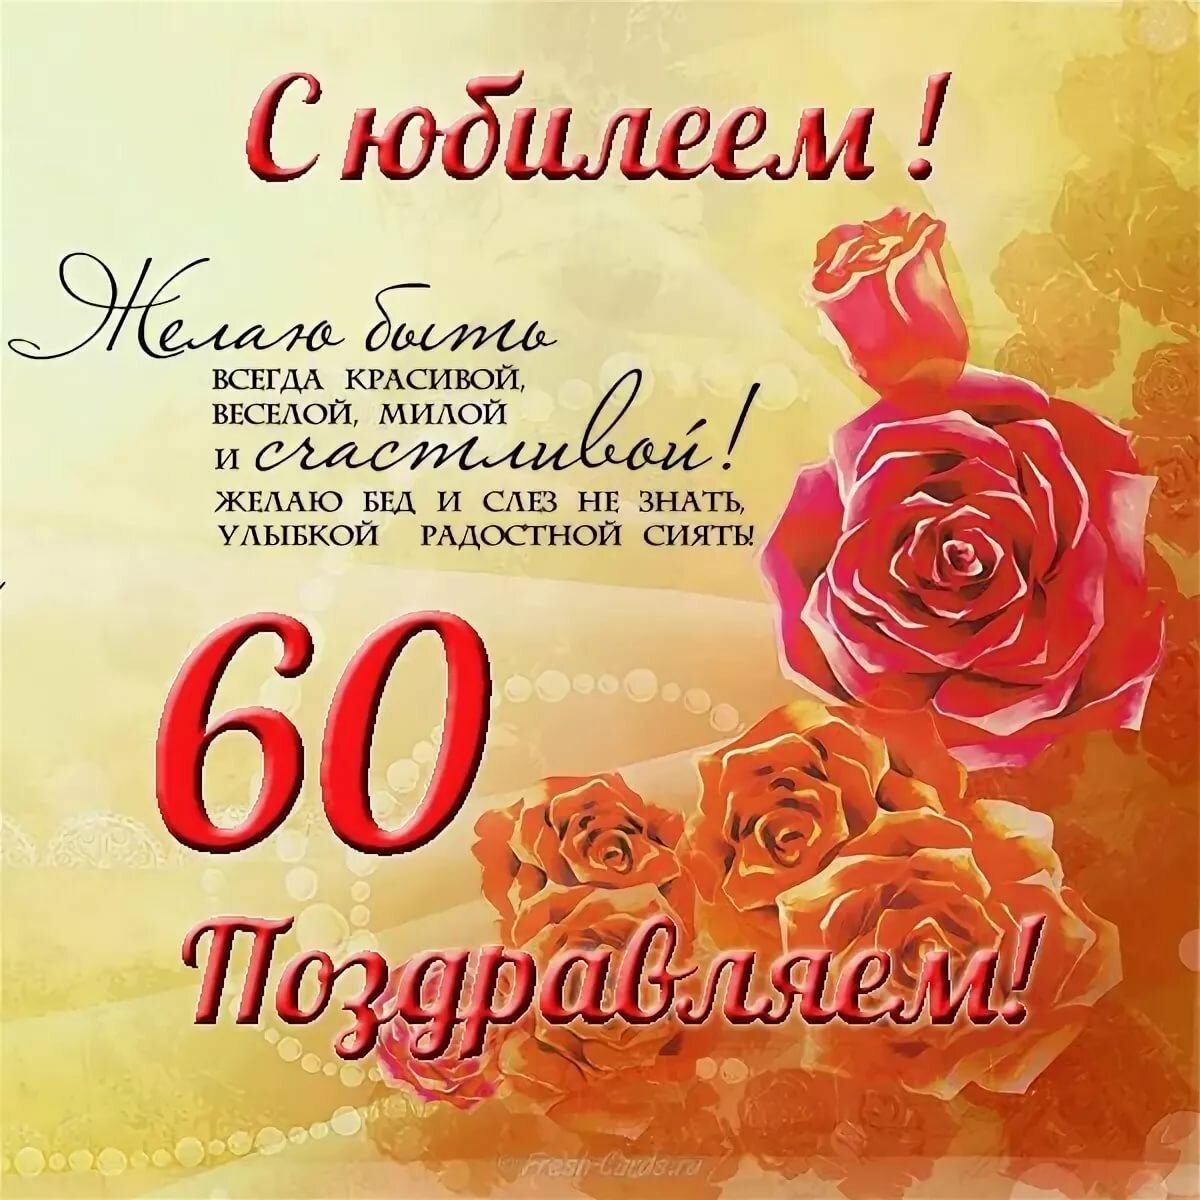 Поздравления с юбилеем 60 лет свекрови от невестки в прозе